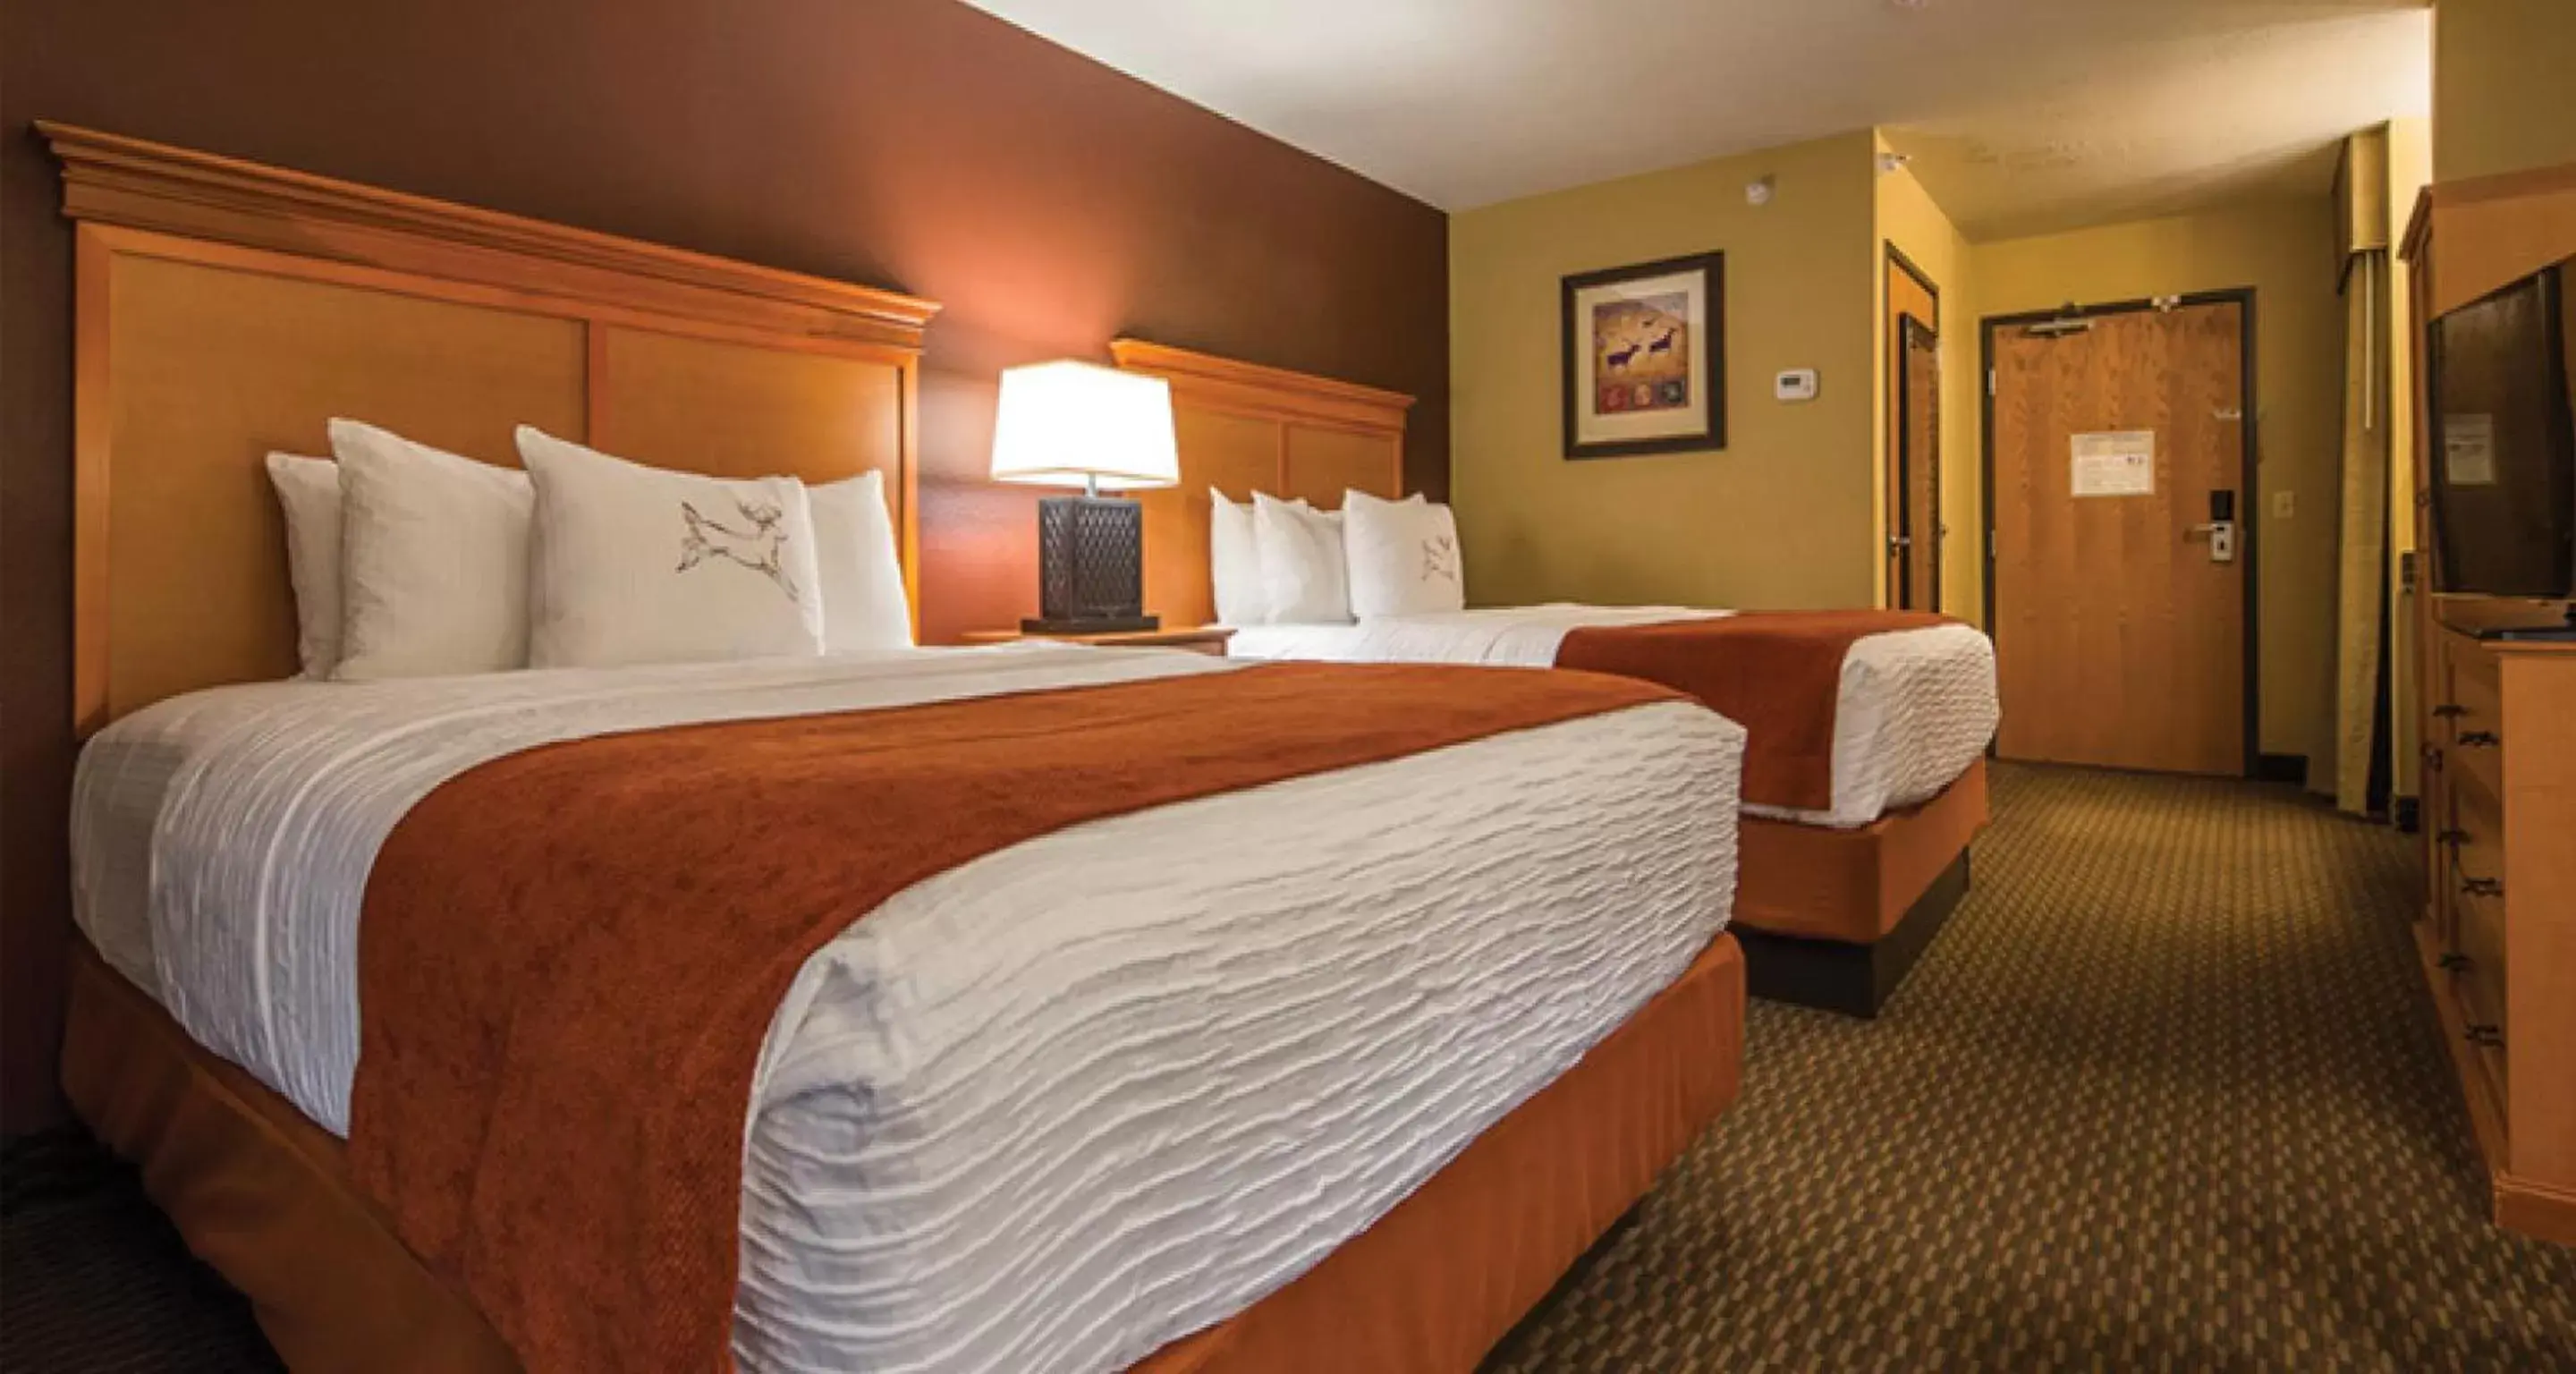 Bedroom, Bed in Best Western Plus Deer Park Hotel and Suites